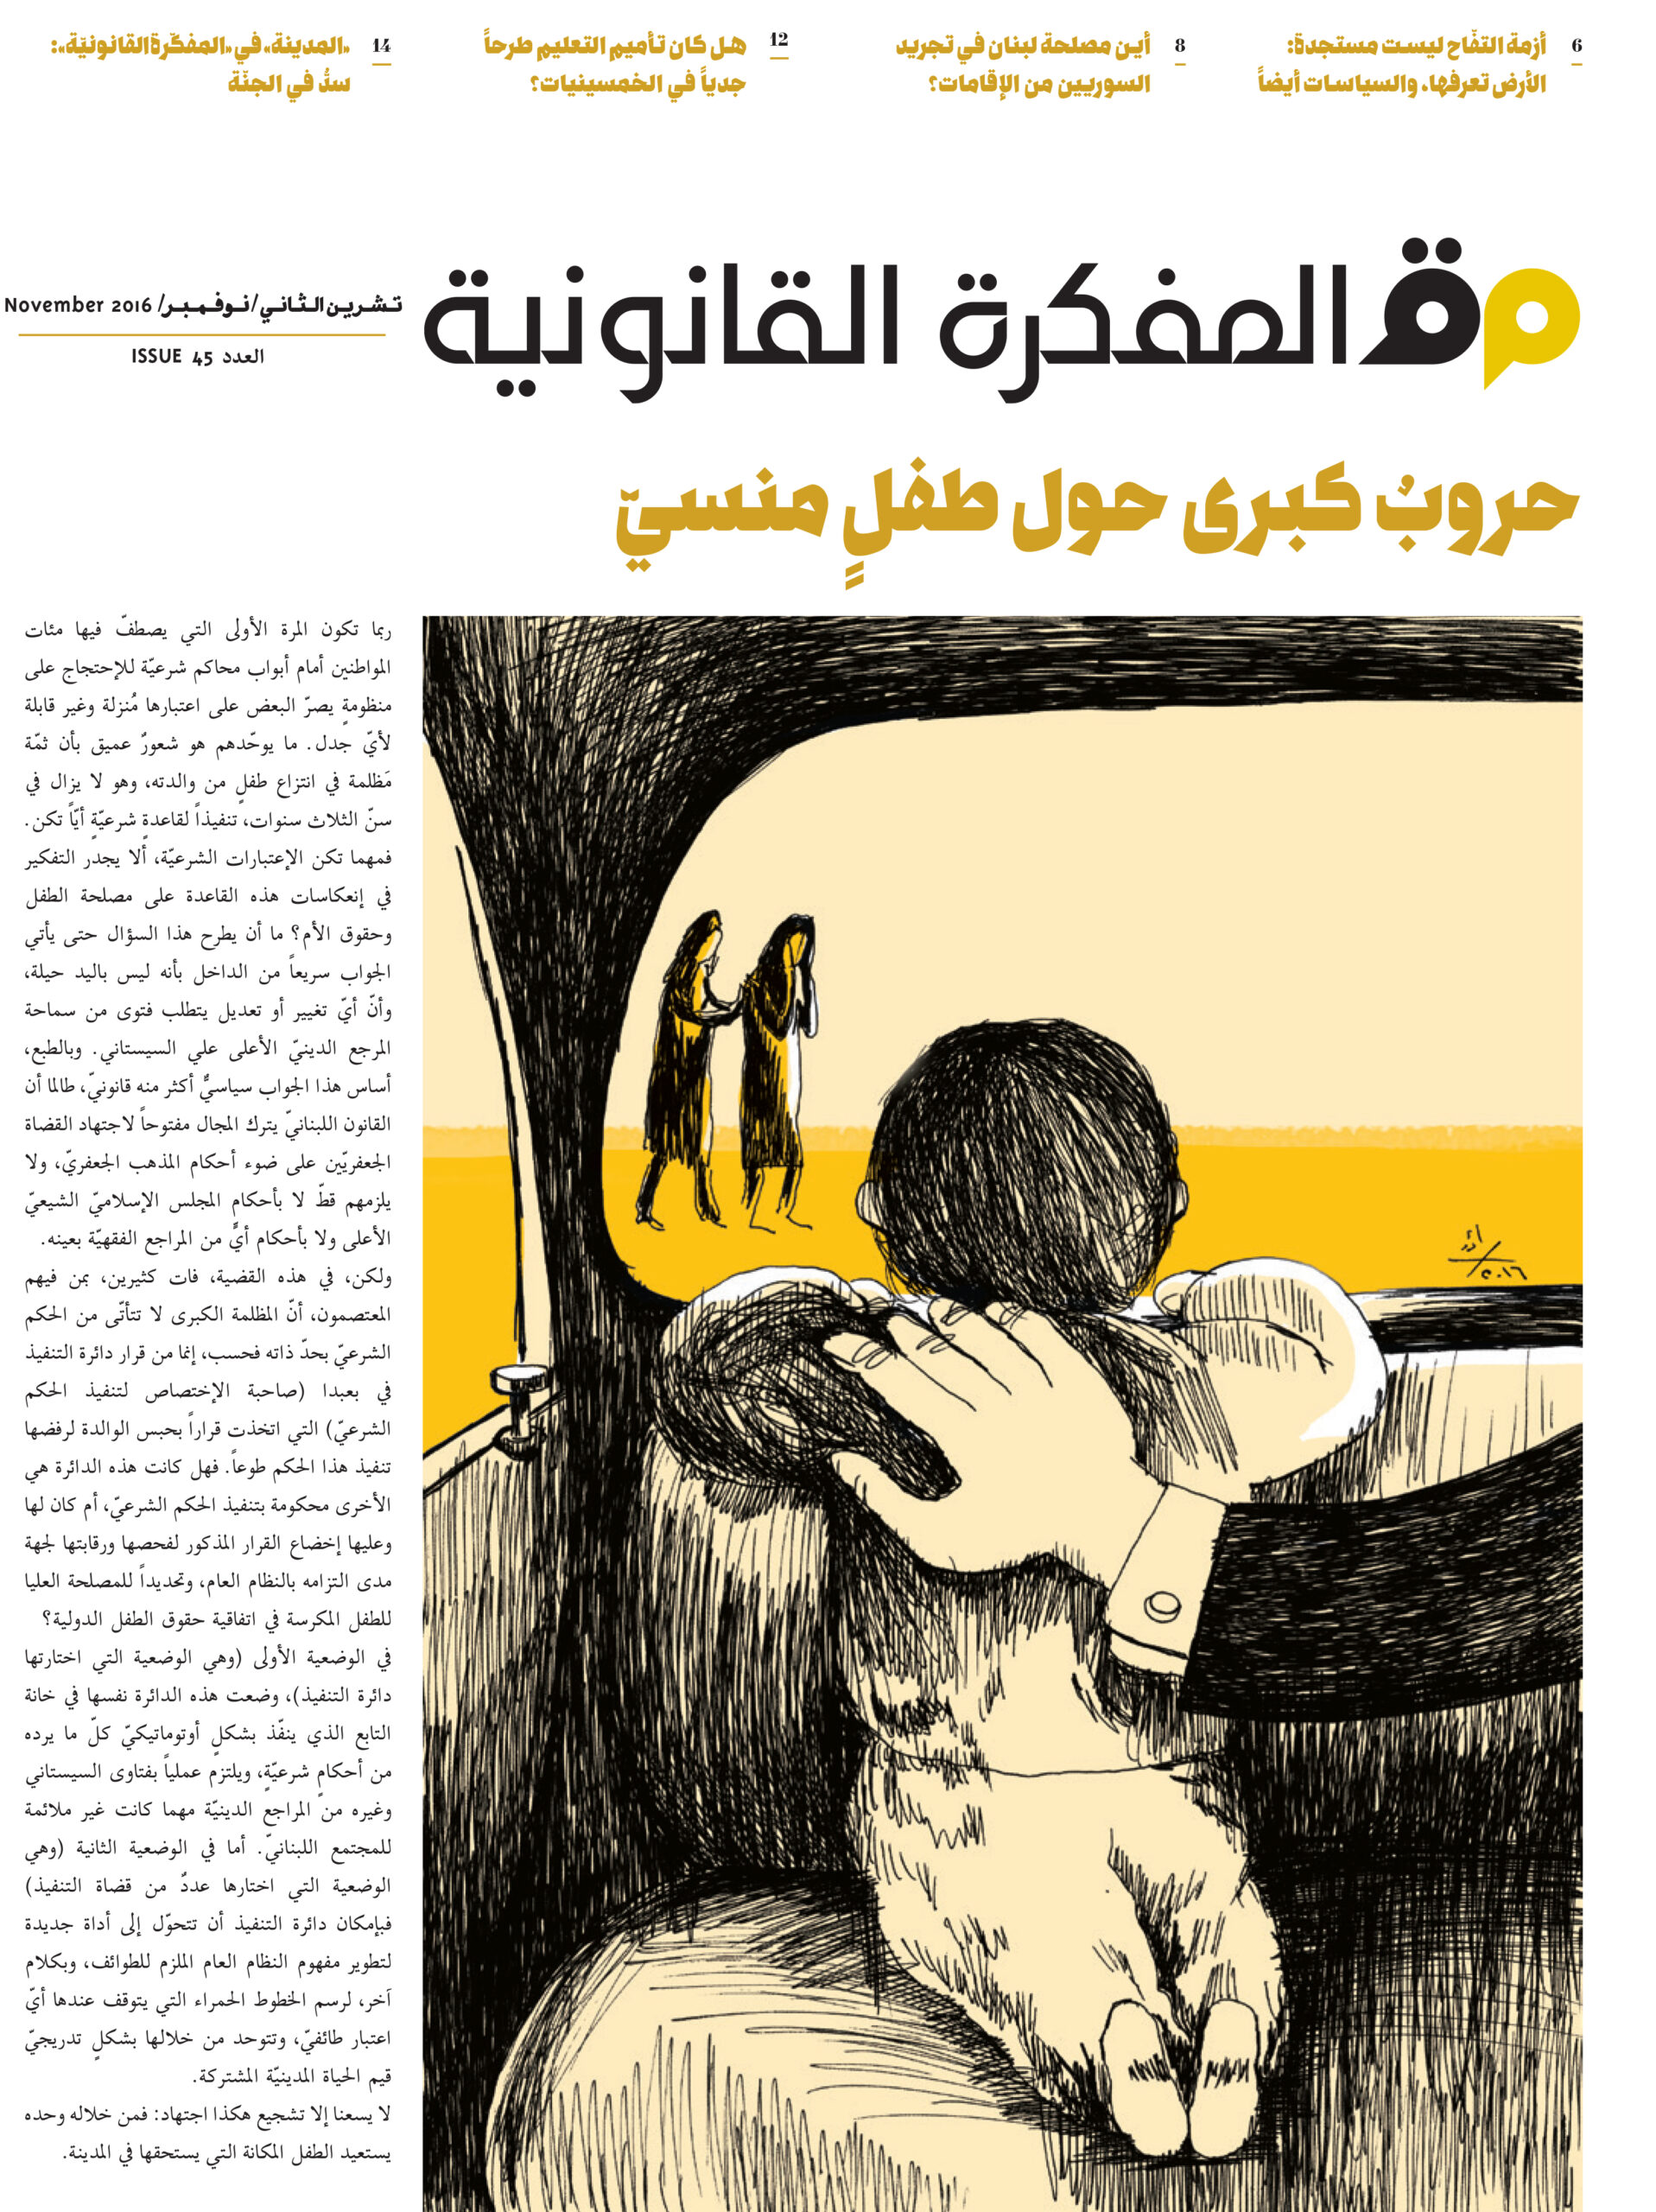 صدر العدد 45 من مجلة المفكرة القانونية بالتعاون مع جريدة السفير